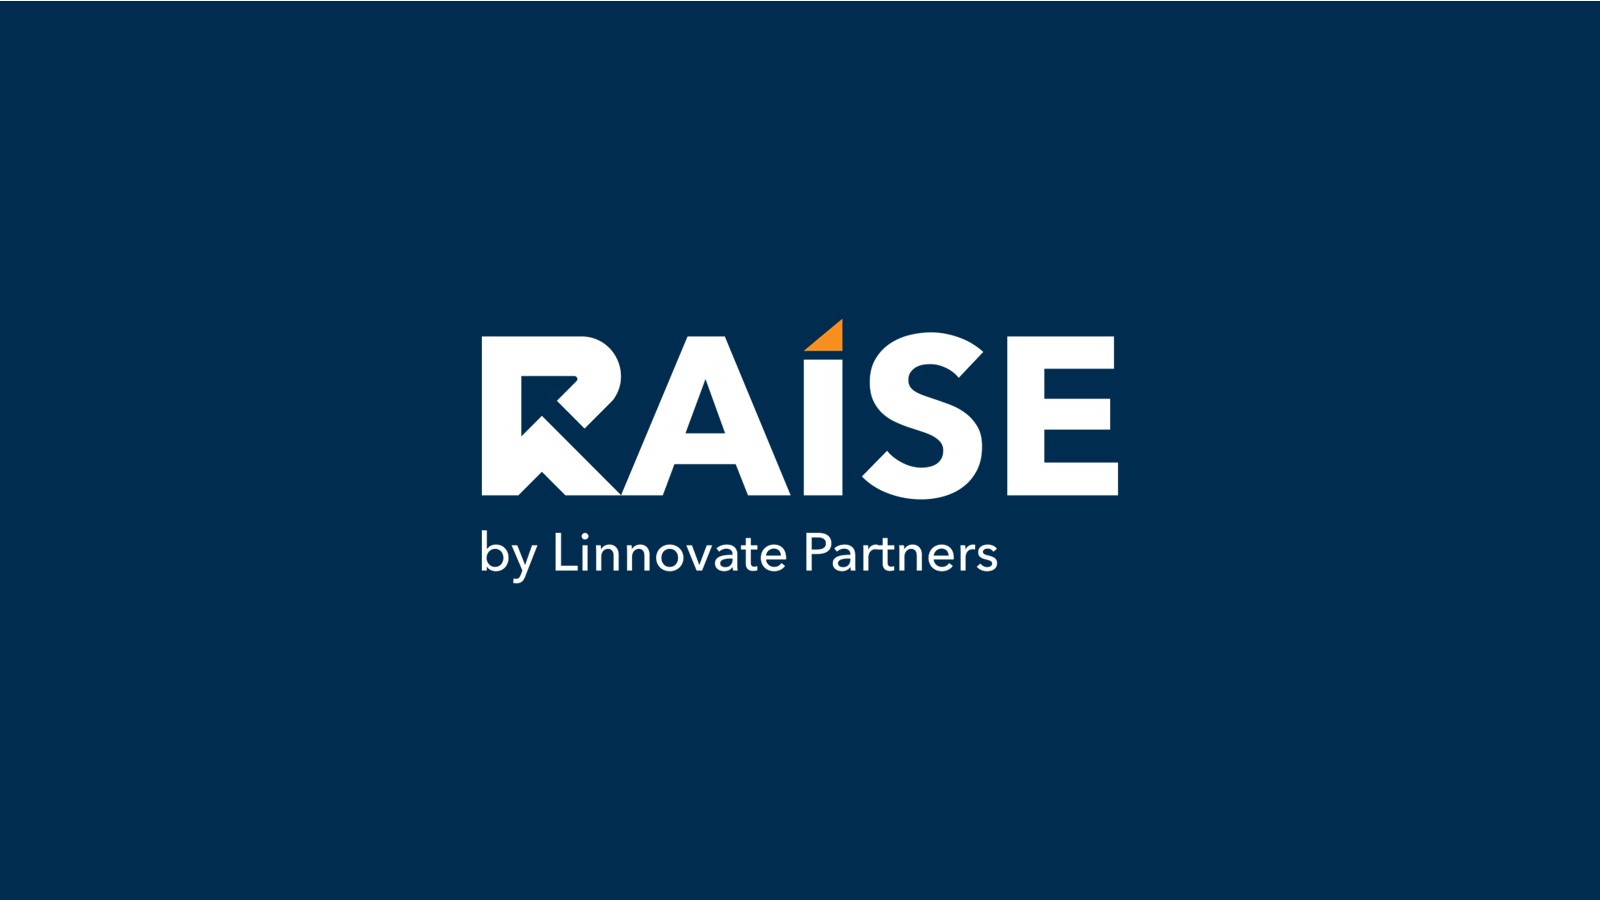 Linnovate Partners Rebrands Technology Platform SMPNet to RAISE